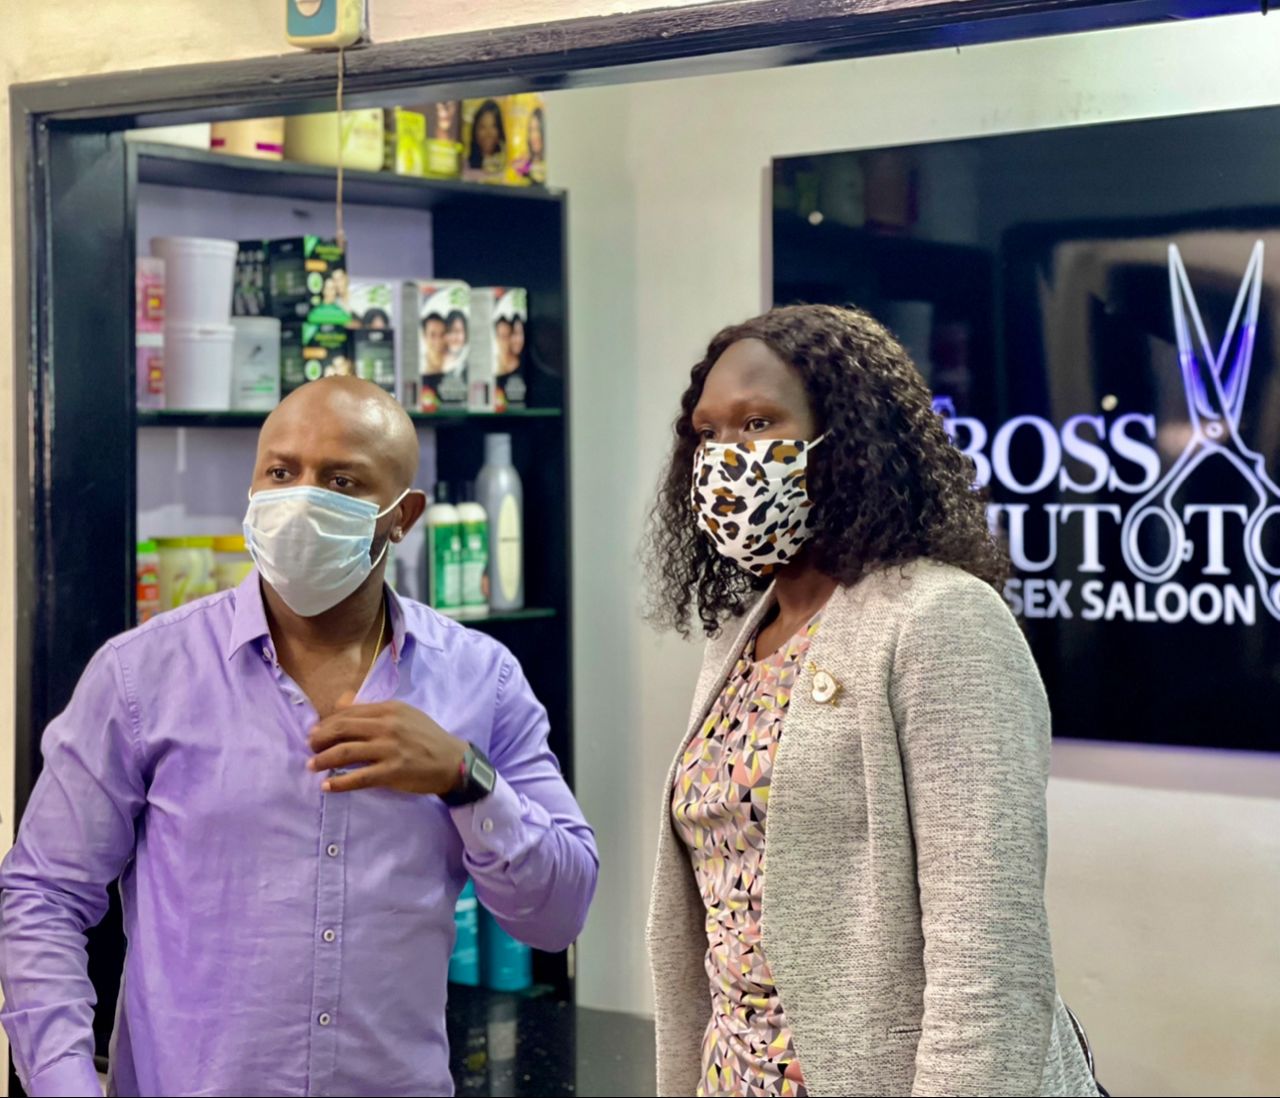 Minister Anite books out  Kansanga’s Boss Mutoto salon